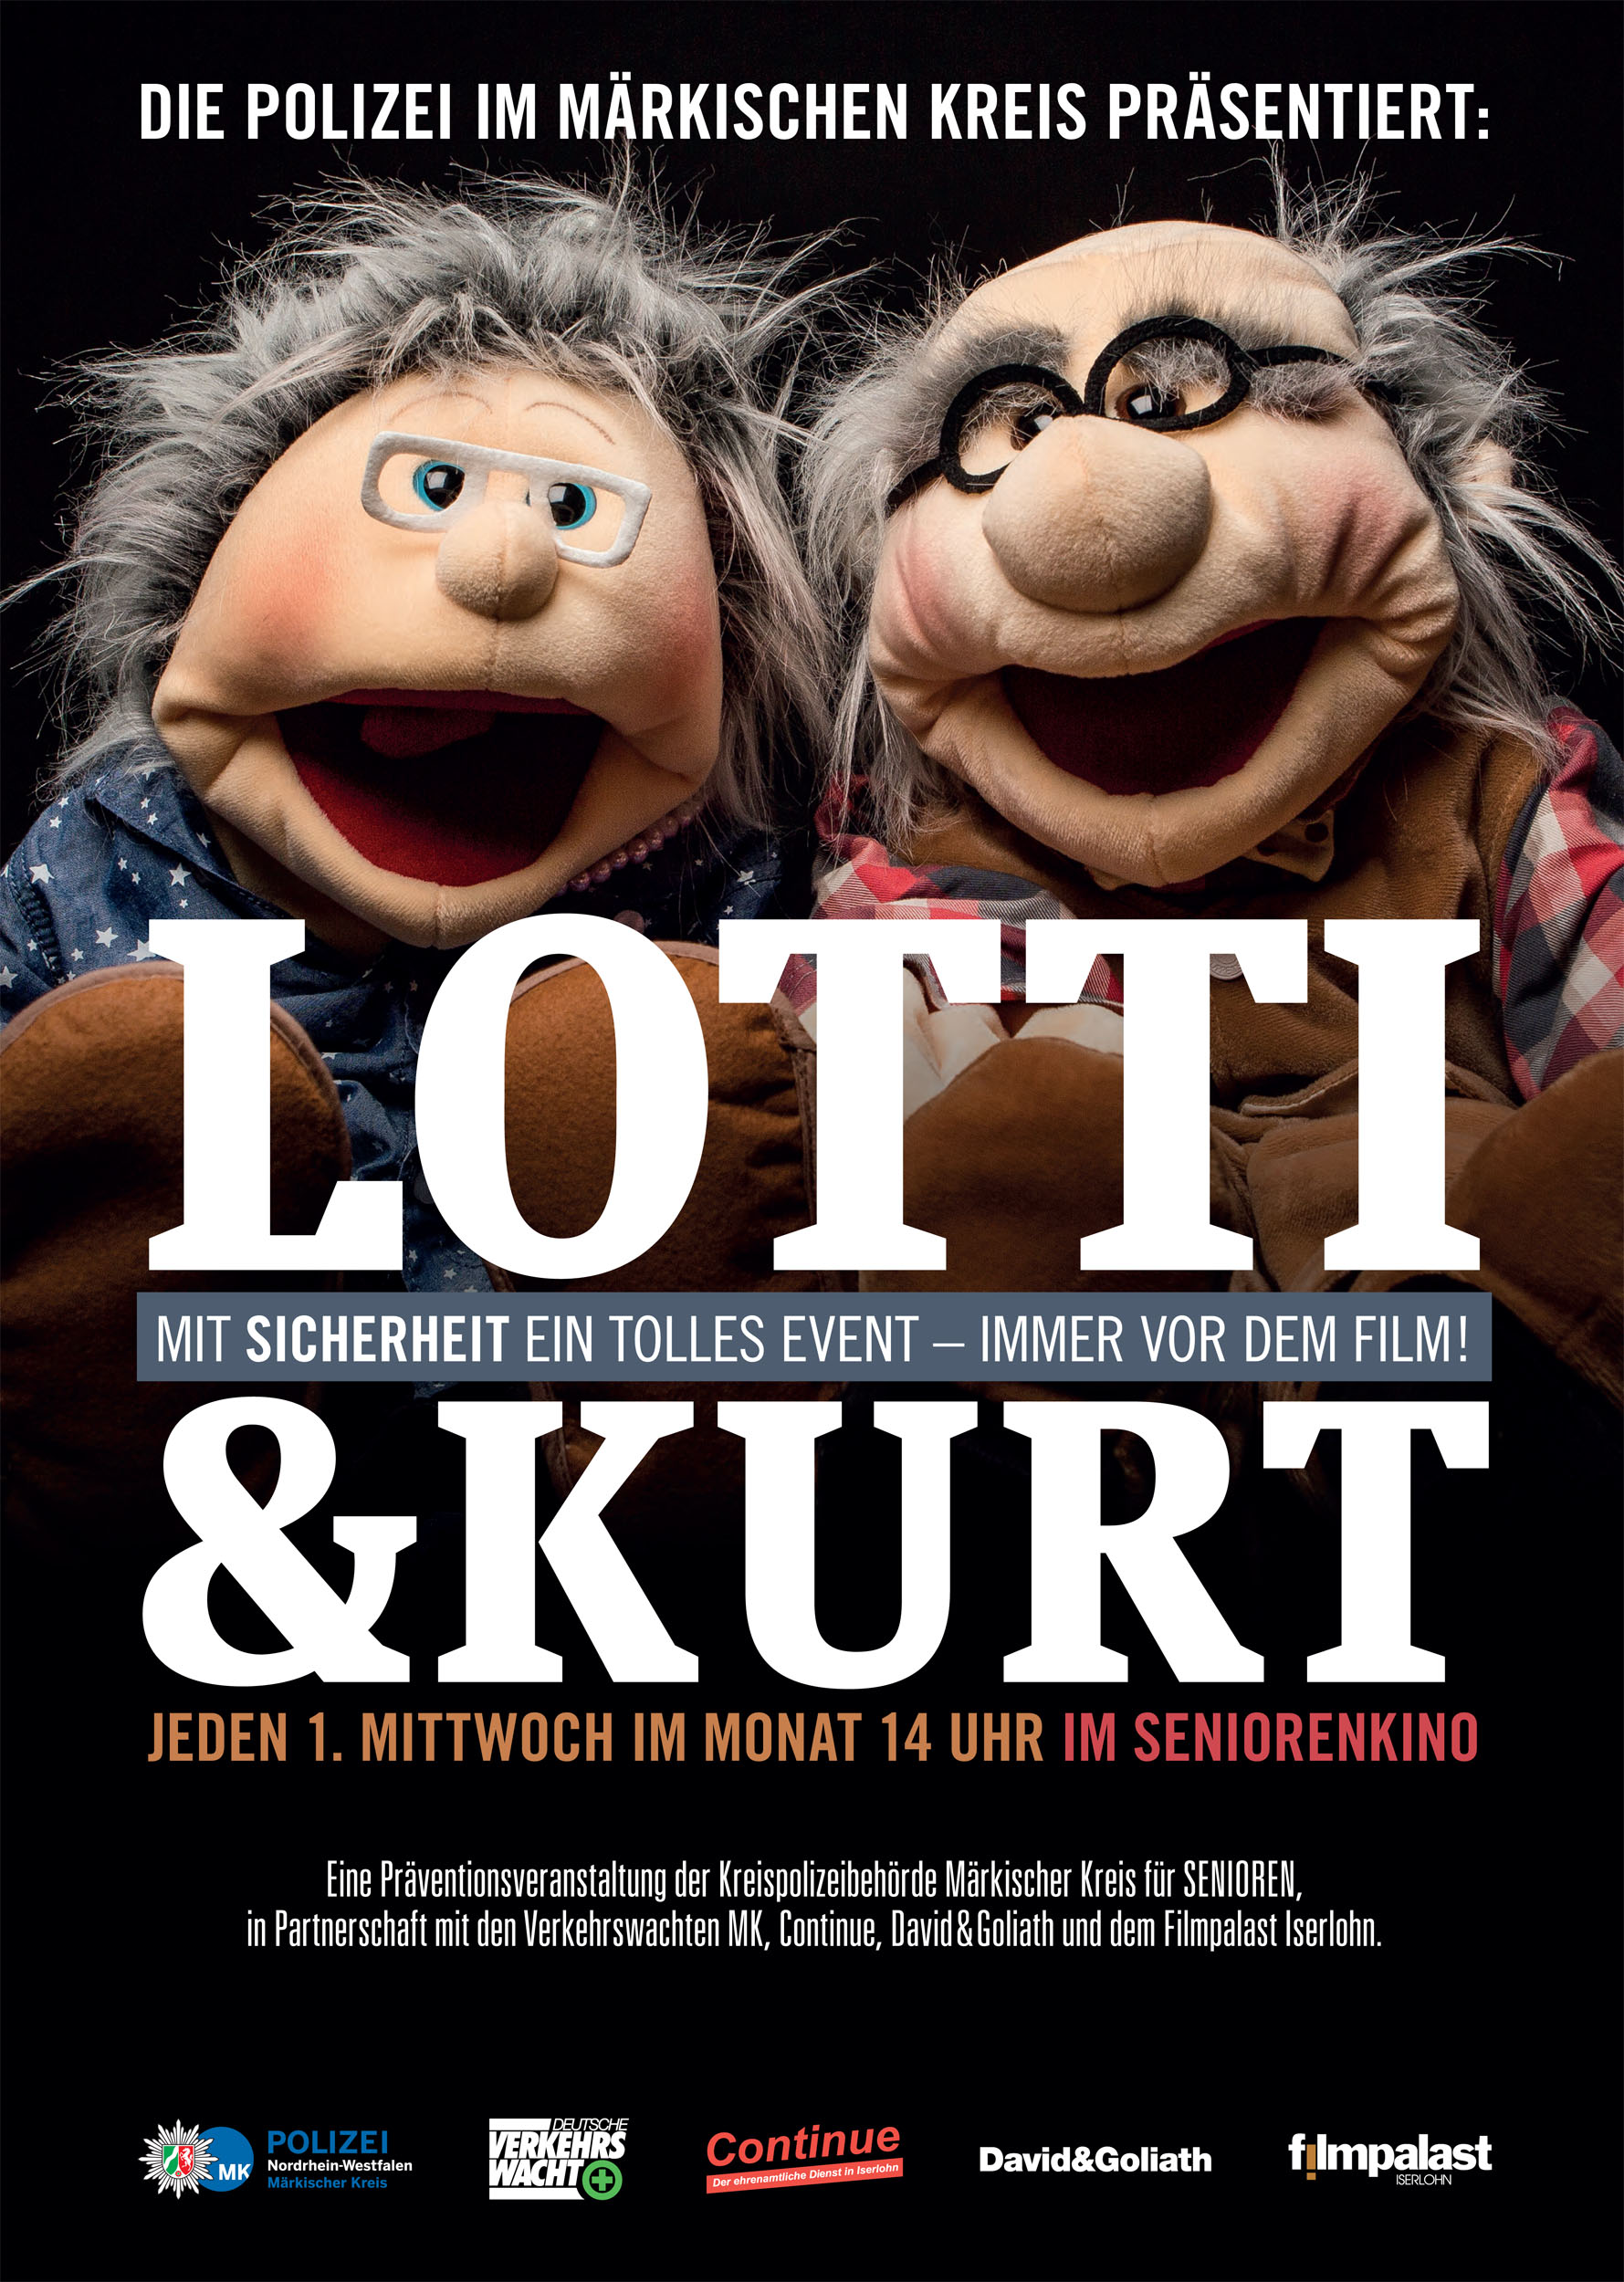 Lotti & Kurt - Mit Sicherheit ein tolles Event!